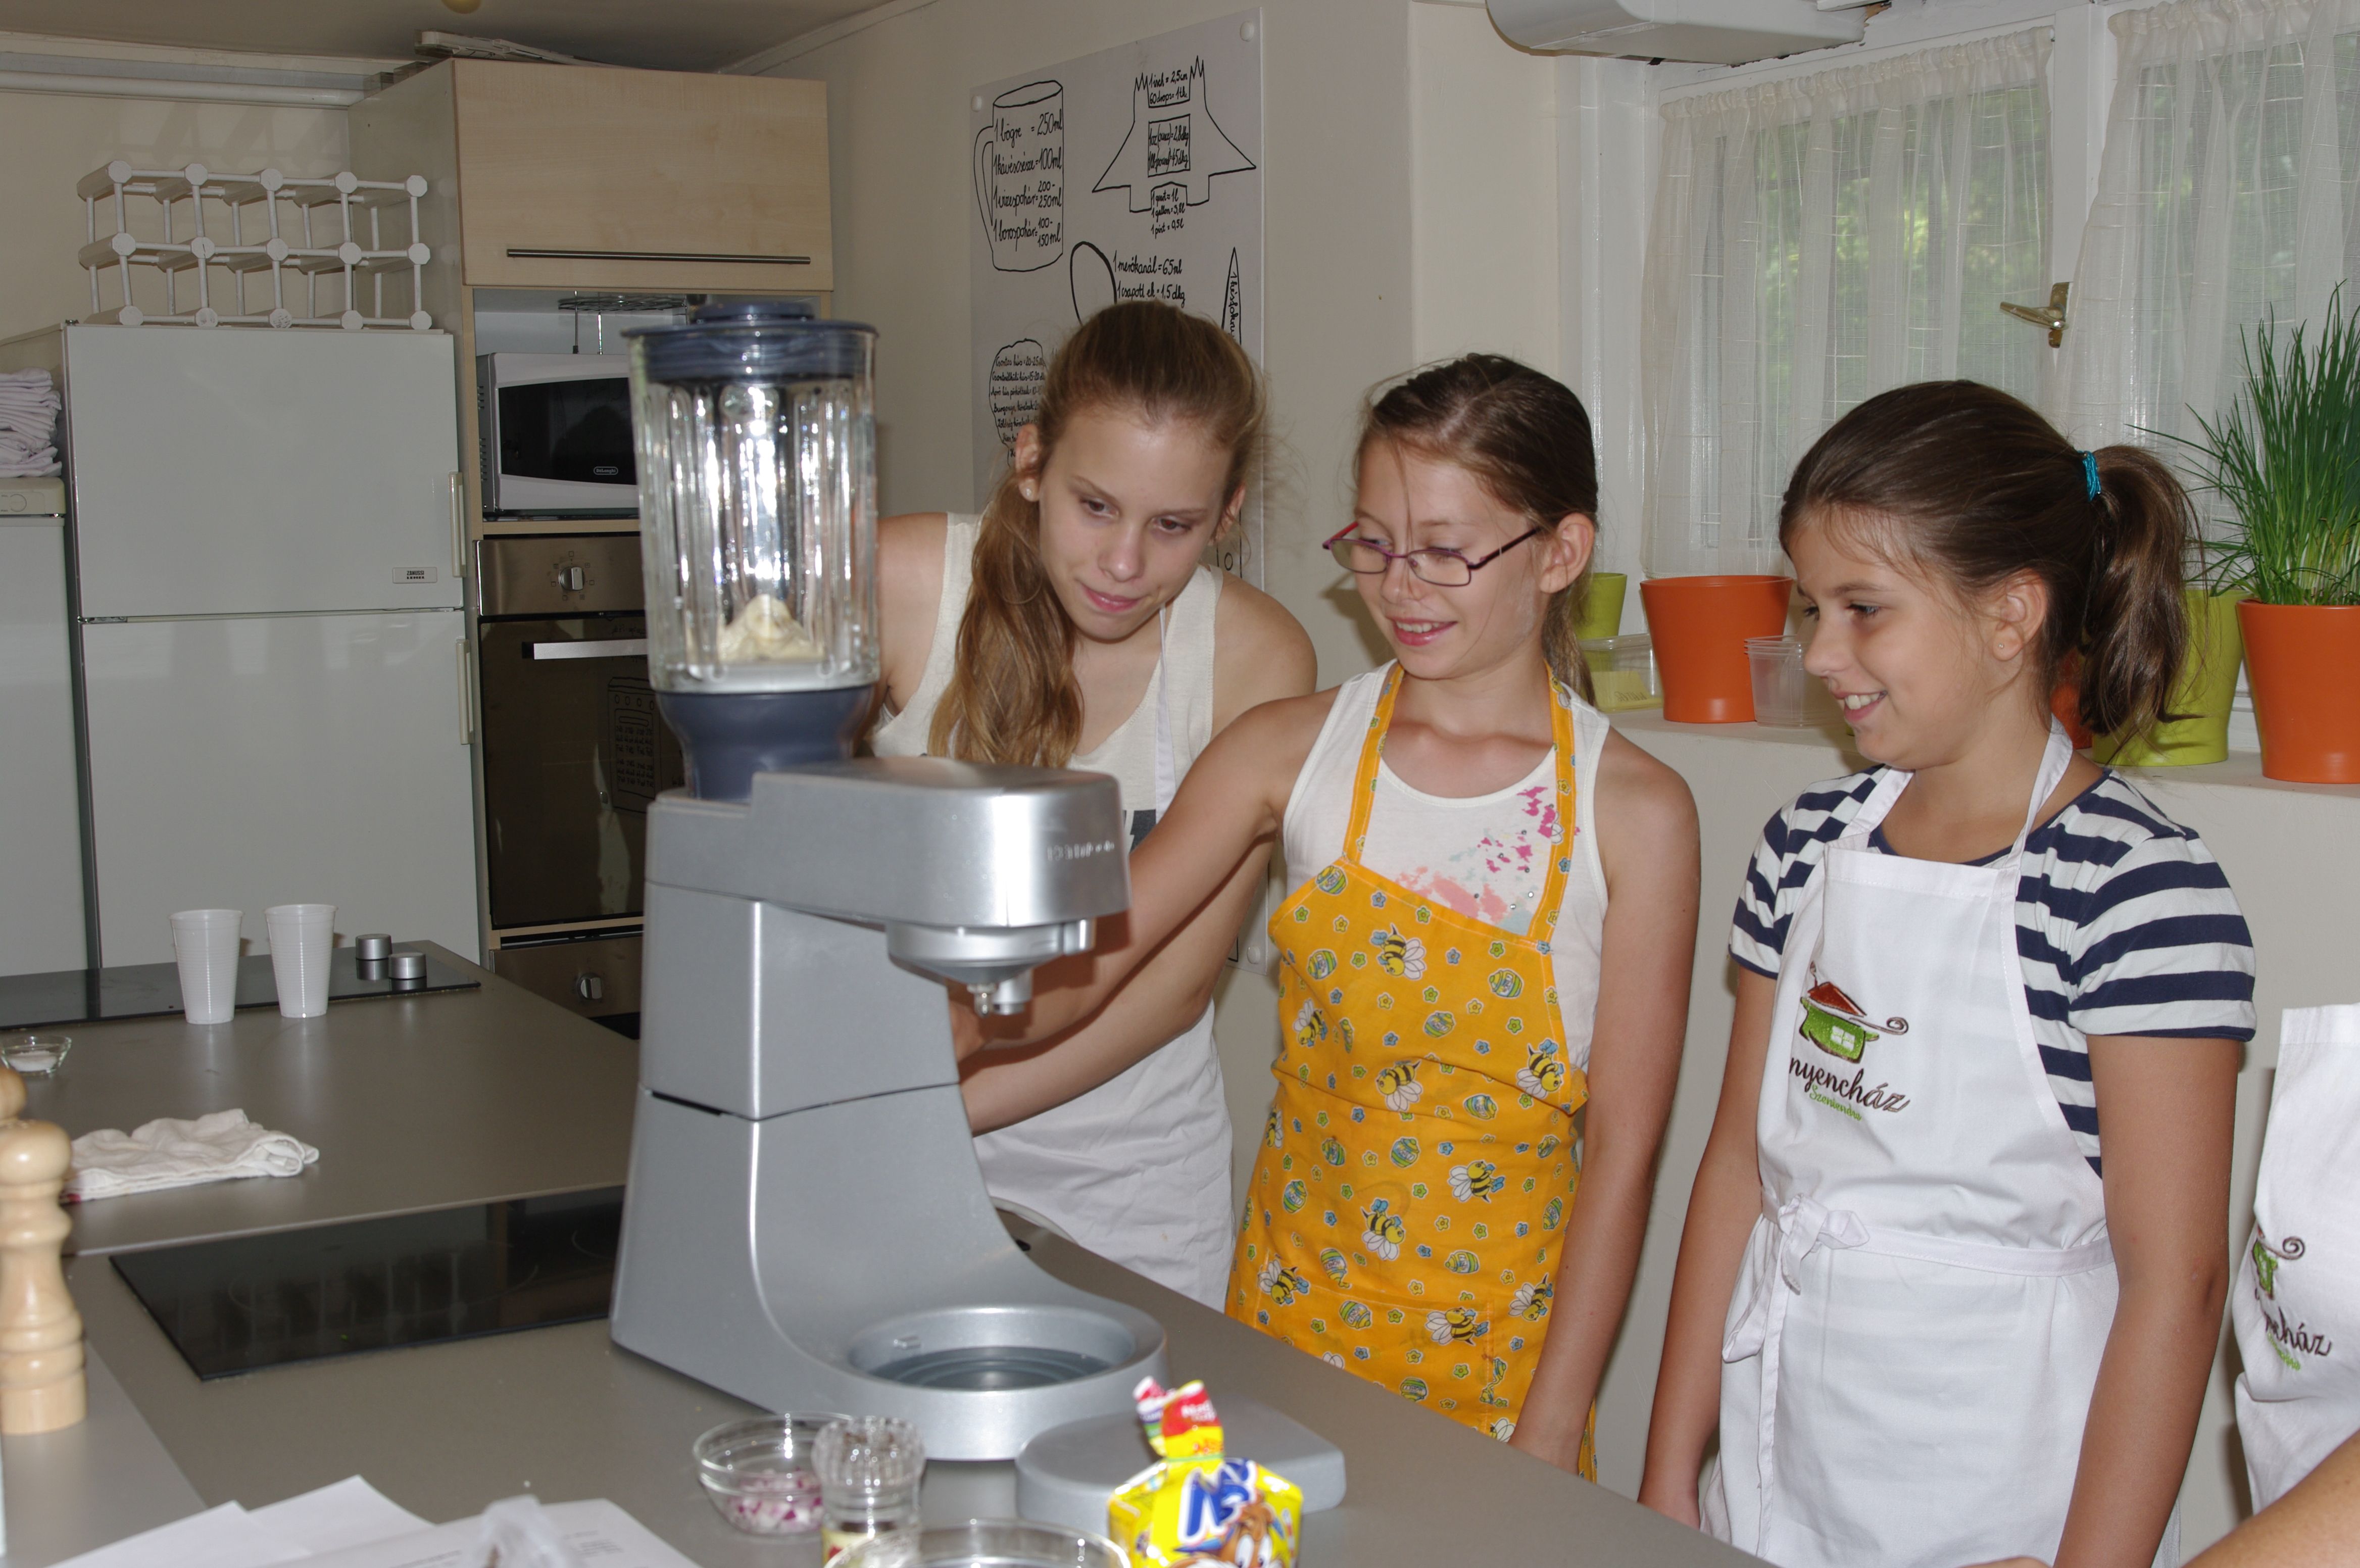 Fantasztikus gyermek főzőtáborok után újra izgalmas gasztro-kurzusok az Ínyencházban